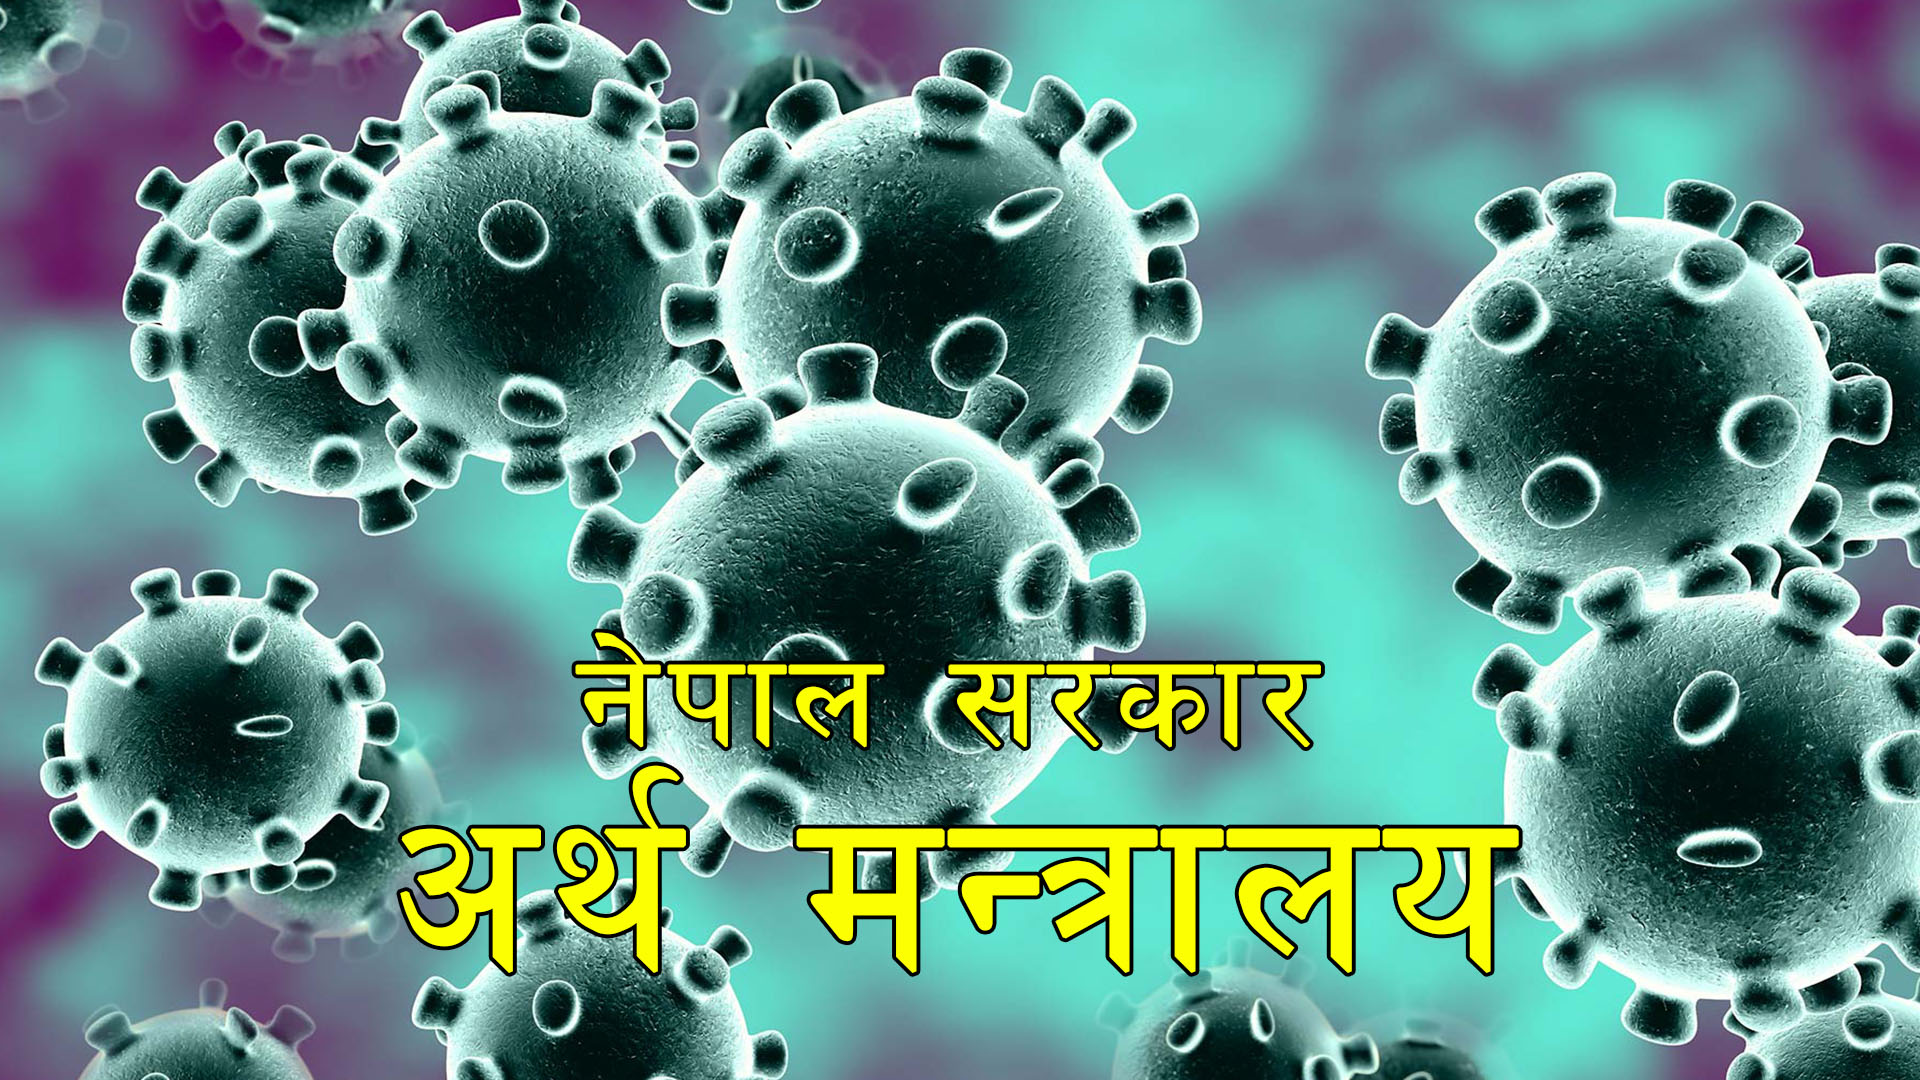 Nepali economy affected by corona virus epidemic